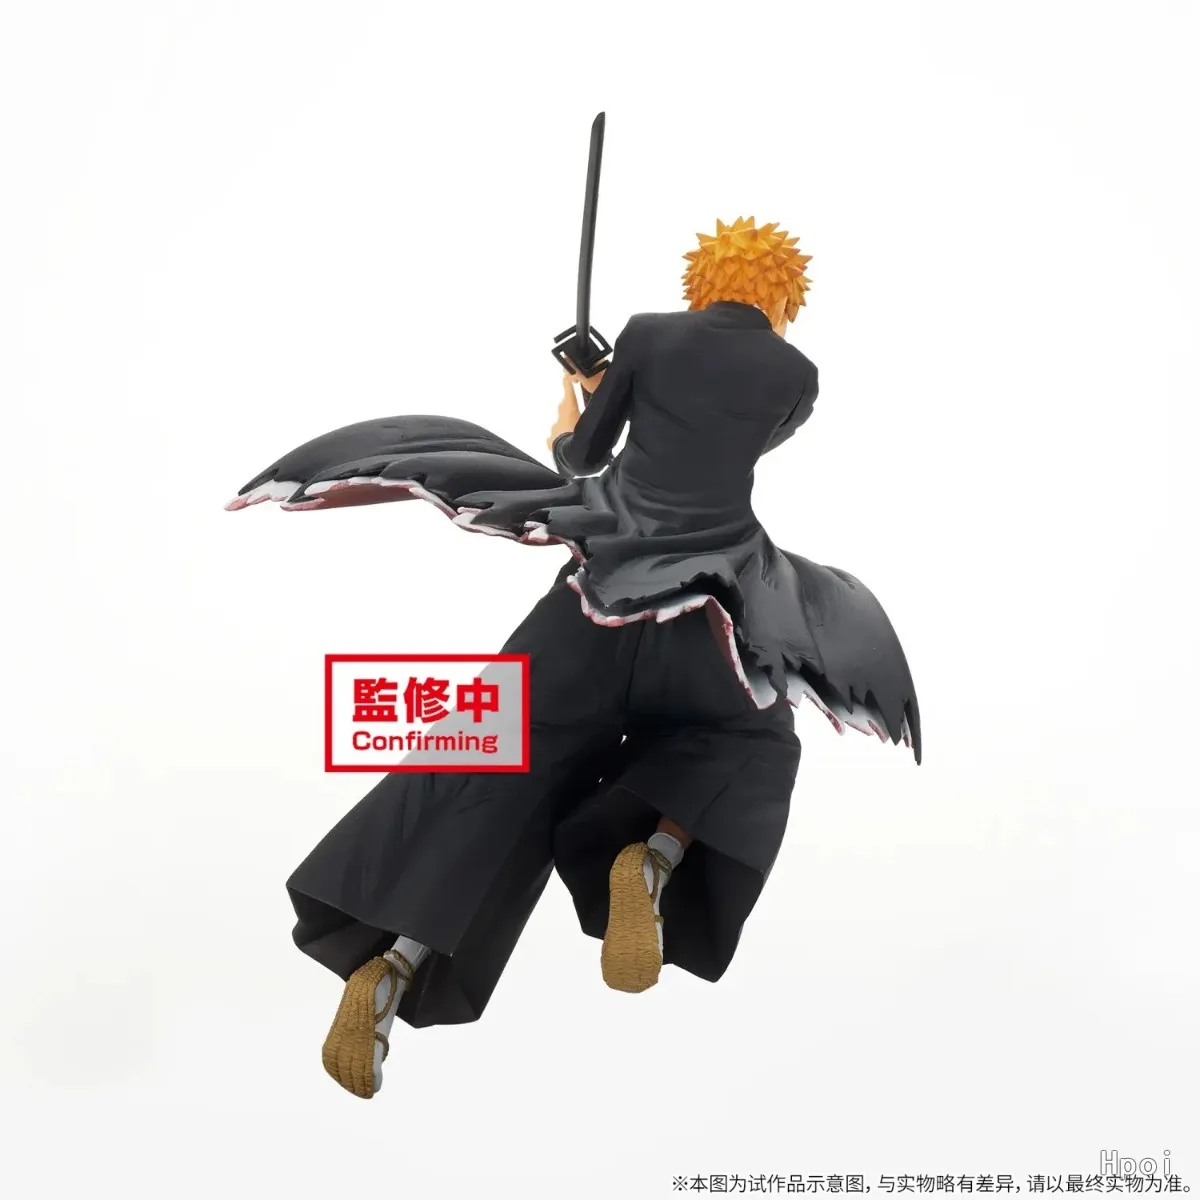 BLEACH Anime Kurosaki Ichigo PVC Figura de Acción de Ornamentos 100% Original, Genuina Modelo de la Colección de Muñecas Juguetes de Realshot . ' - ' . 2